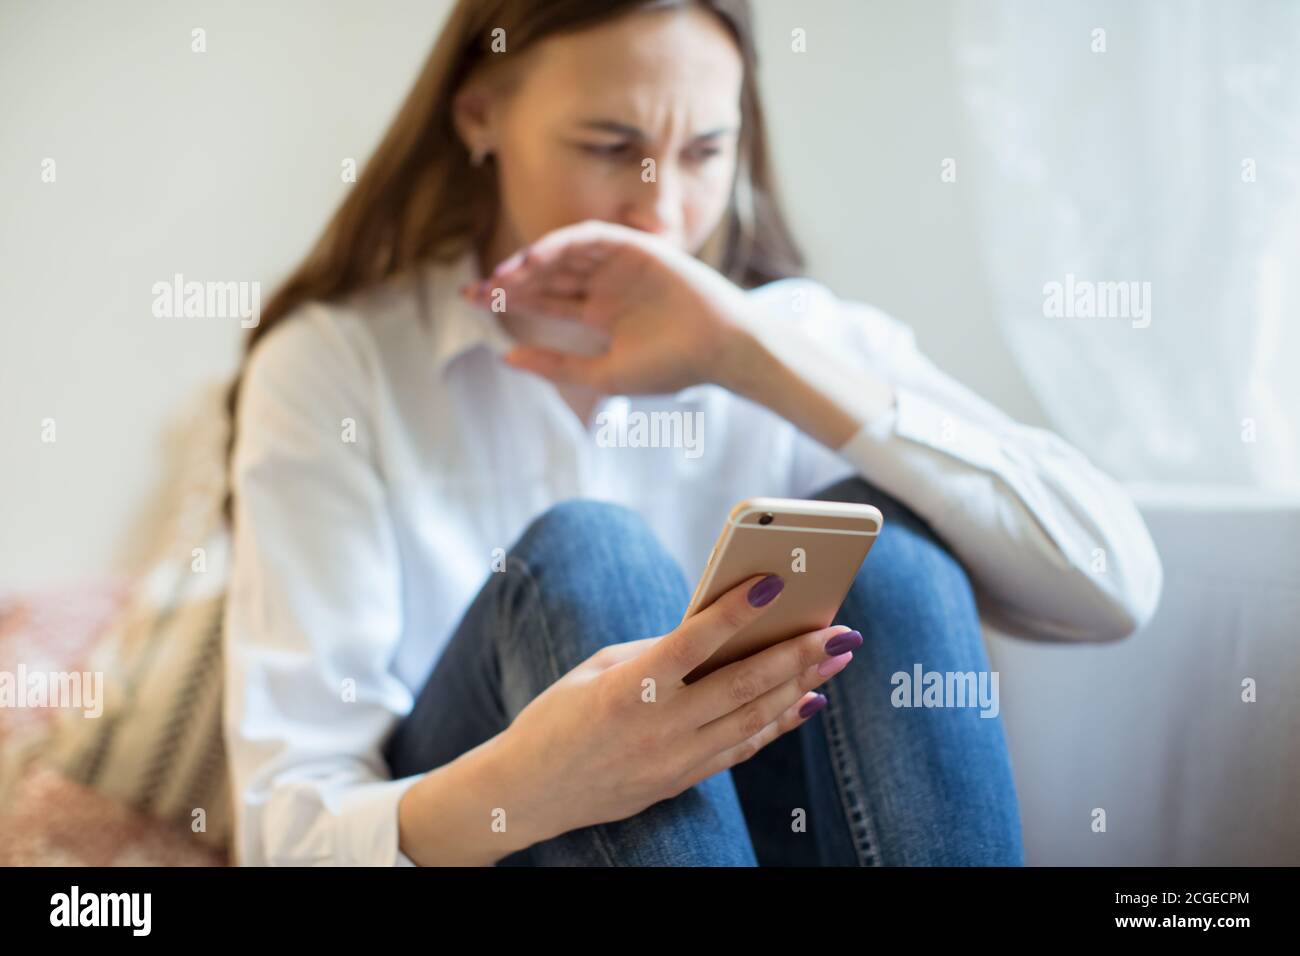 Llorando a una mujer joven en depresión mirando el teléfono recibe malas noticias, cubriendo la boca con la mano. Chica triste preocupada recibiendo mal mensaje. Emociones negativas Foto de stock